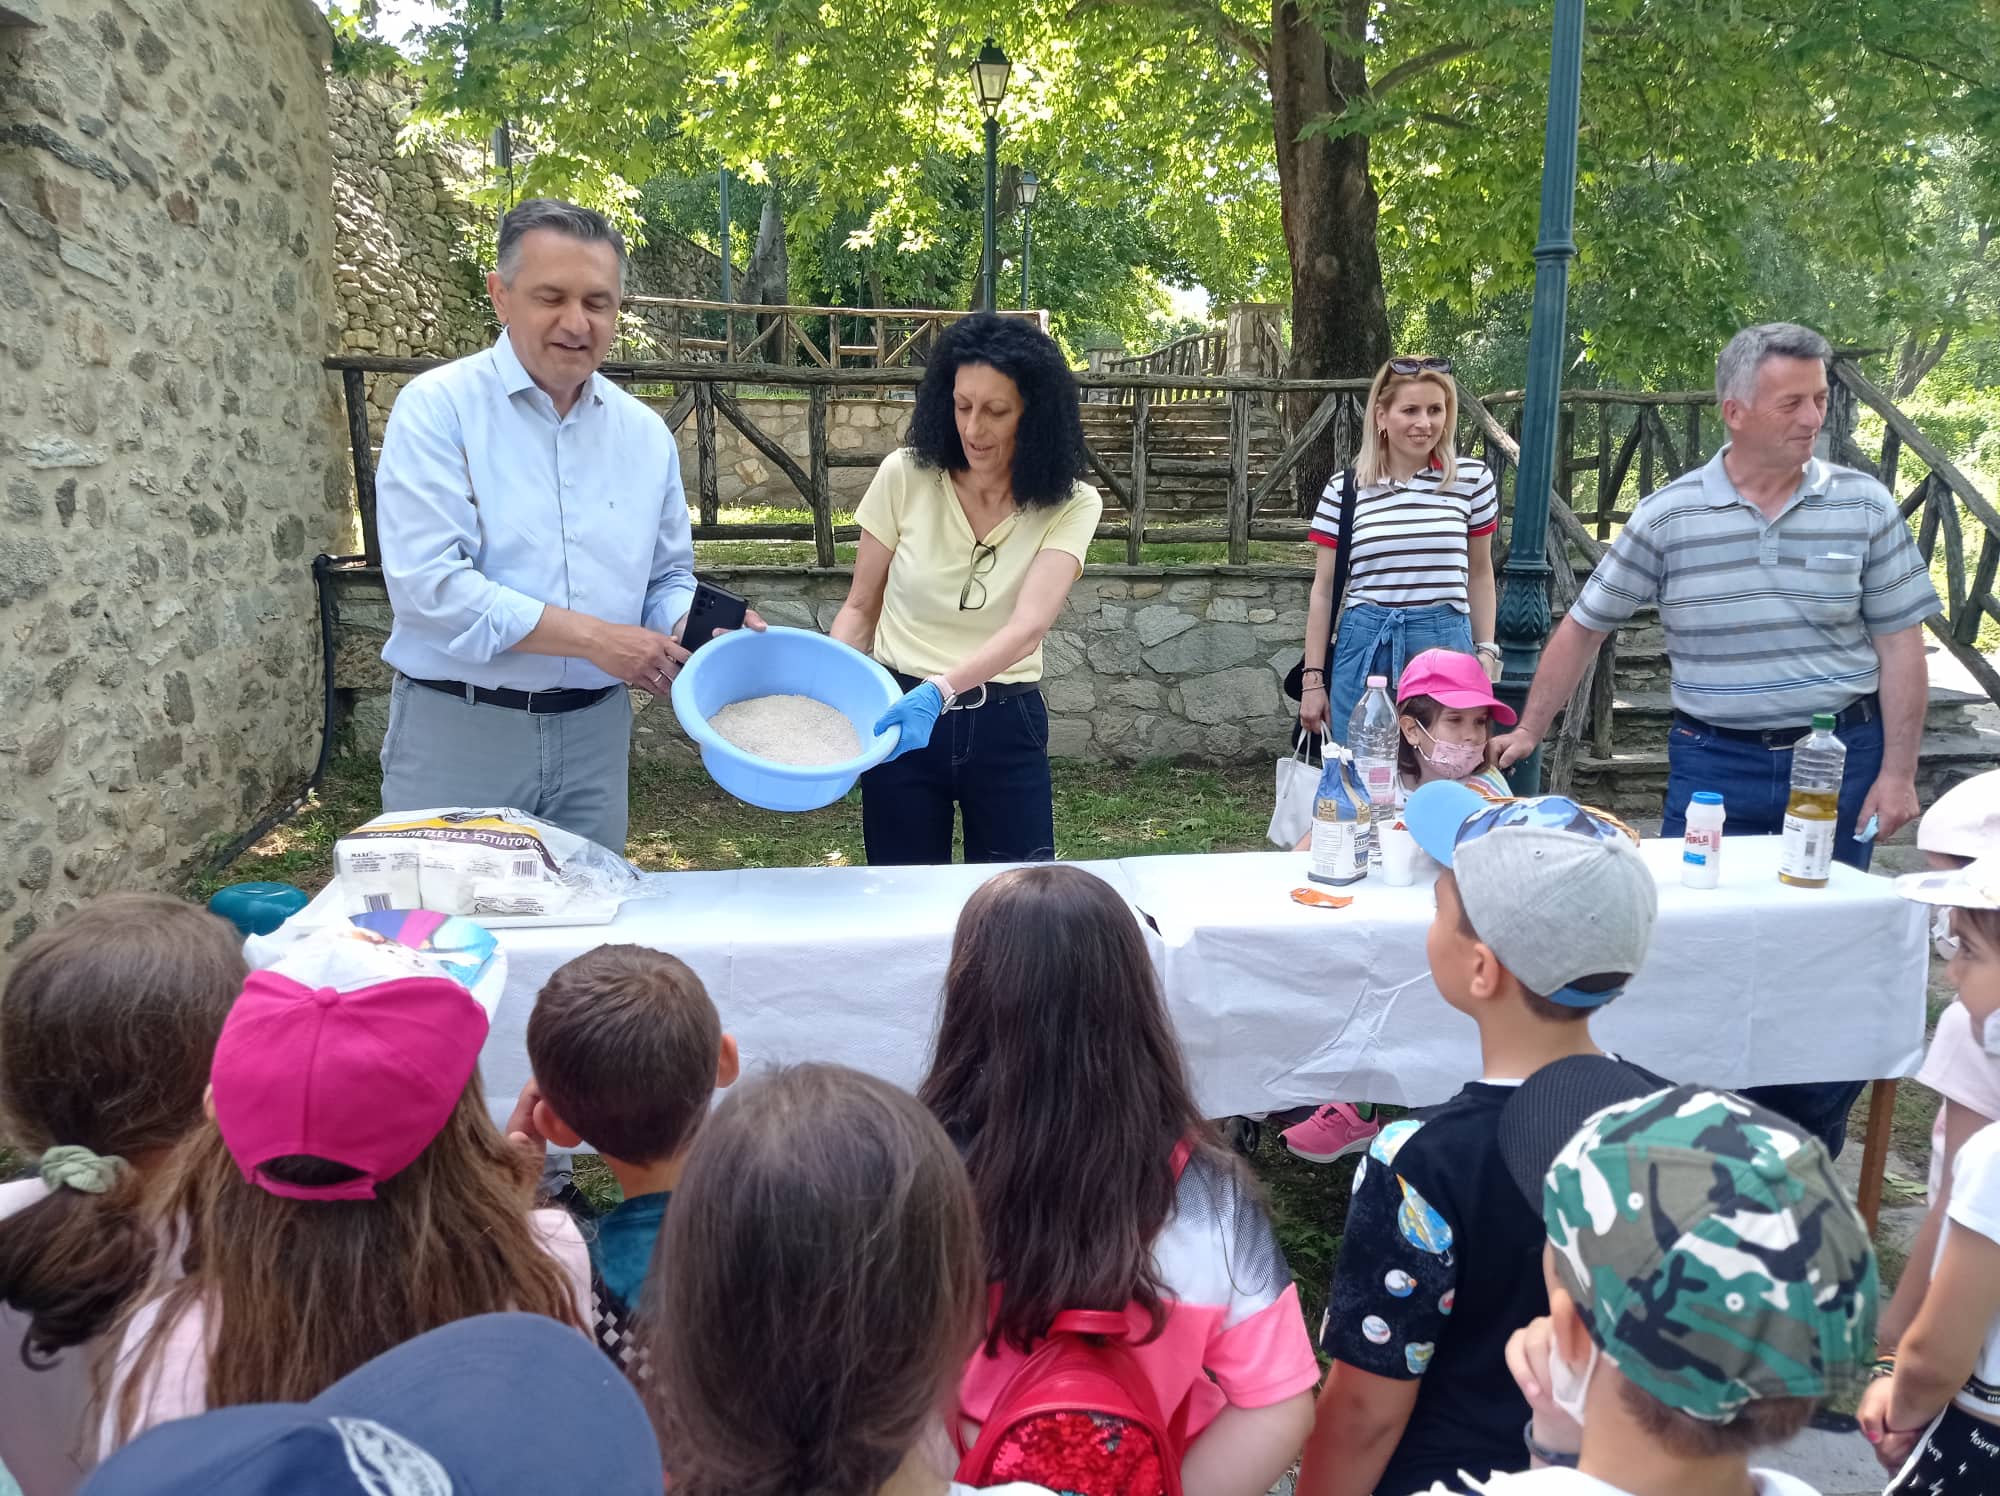 Το Κέντρο Εκπαίδευσης για το Περιβάλλον και την Αειφορία Βελβεντού «φυτεύει τον σπόρο» για την προστασία του Περιβάλλοντος  σε μικρούς μαθητές-Επίσκεψη του Περιφερειάρχη Δυτικής Μακεδονίας Γιώργου Κασαπίδη στο Κέντρο Εκπαίδευσης.   